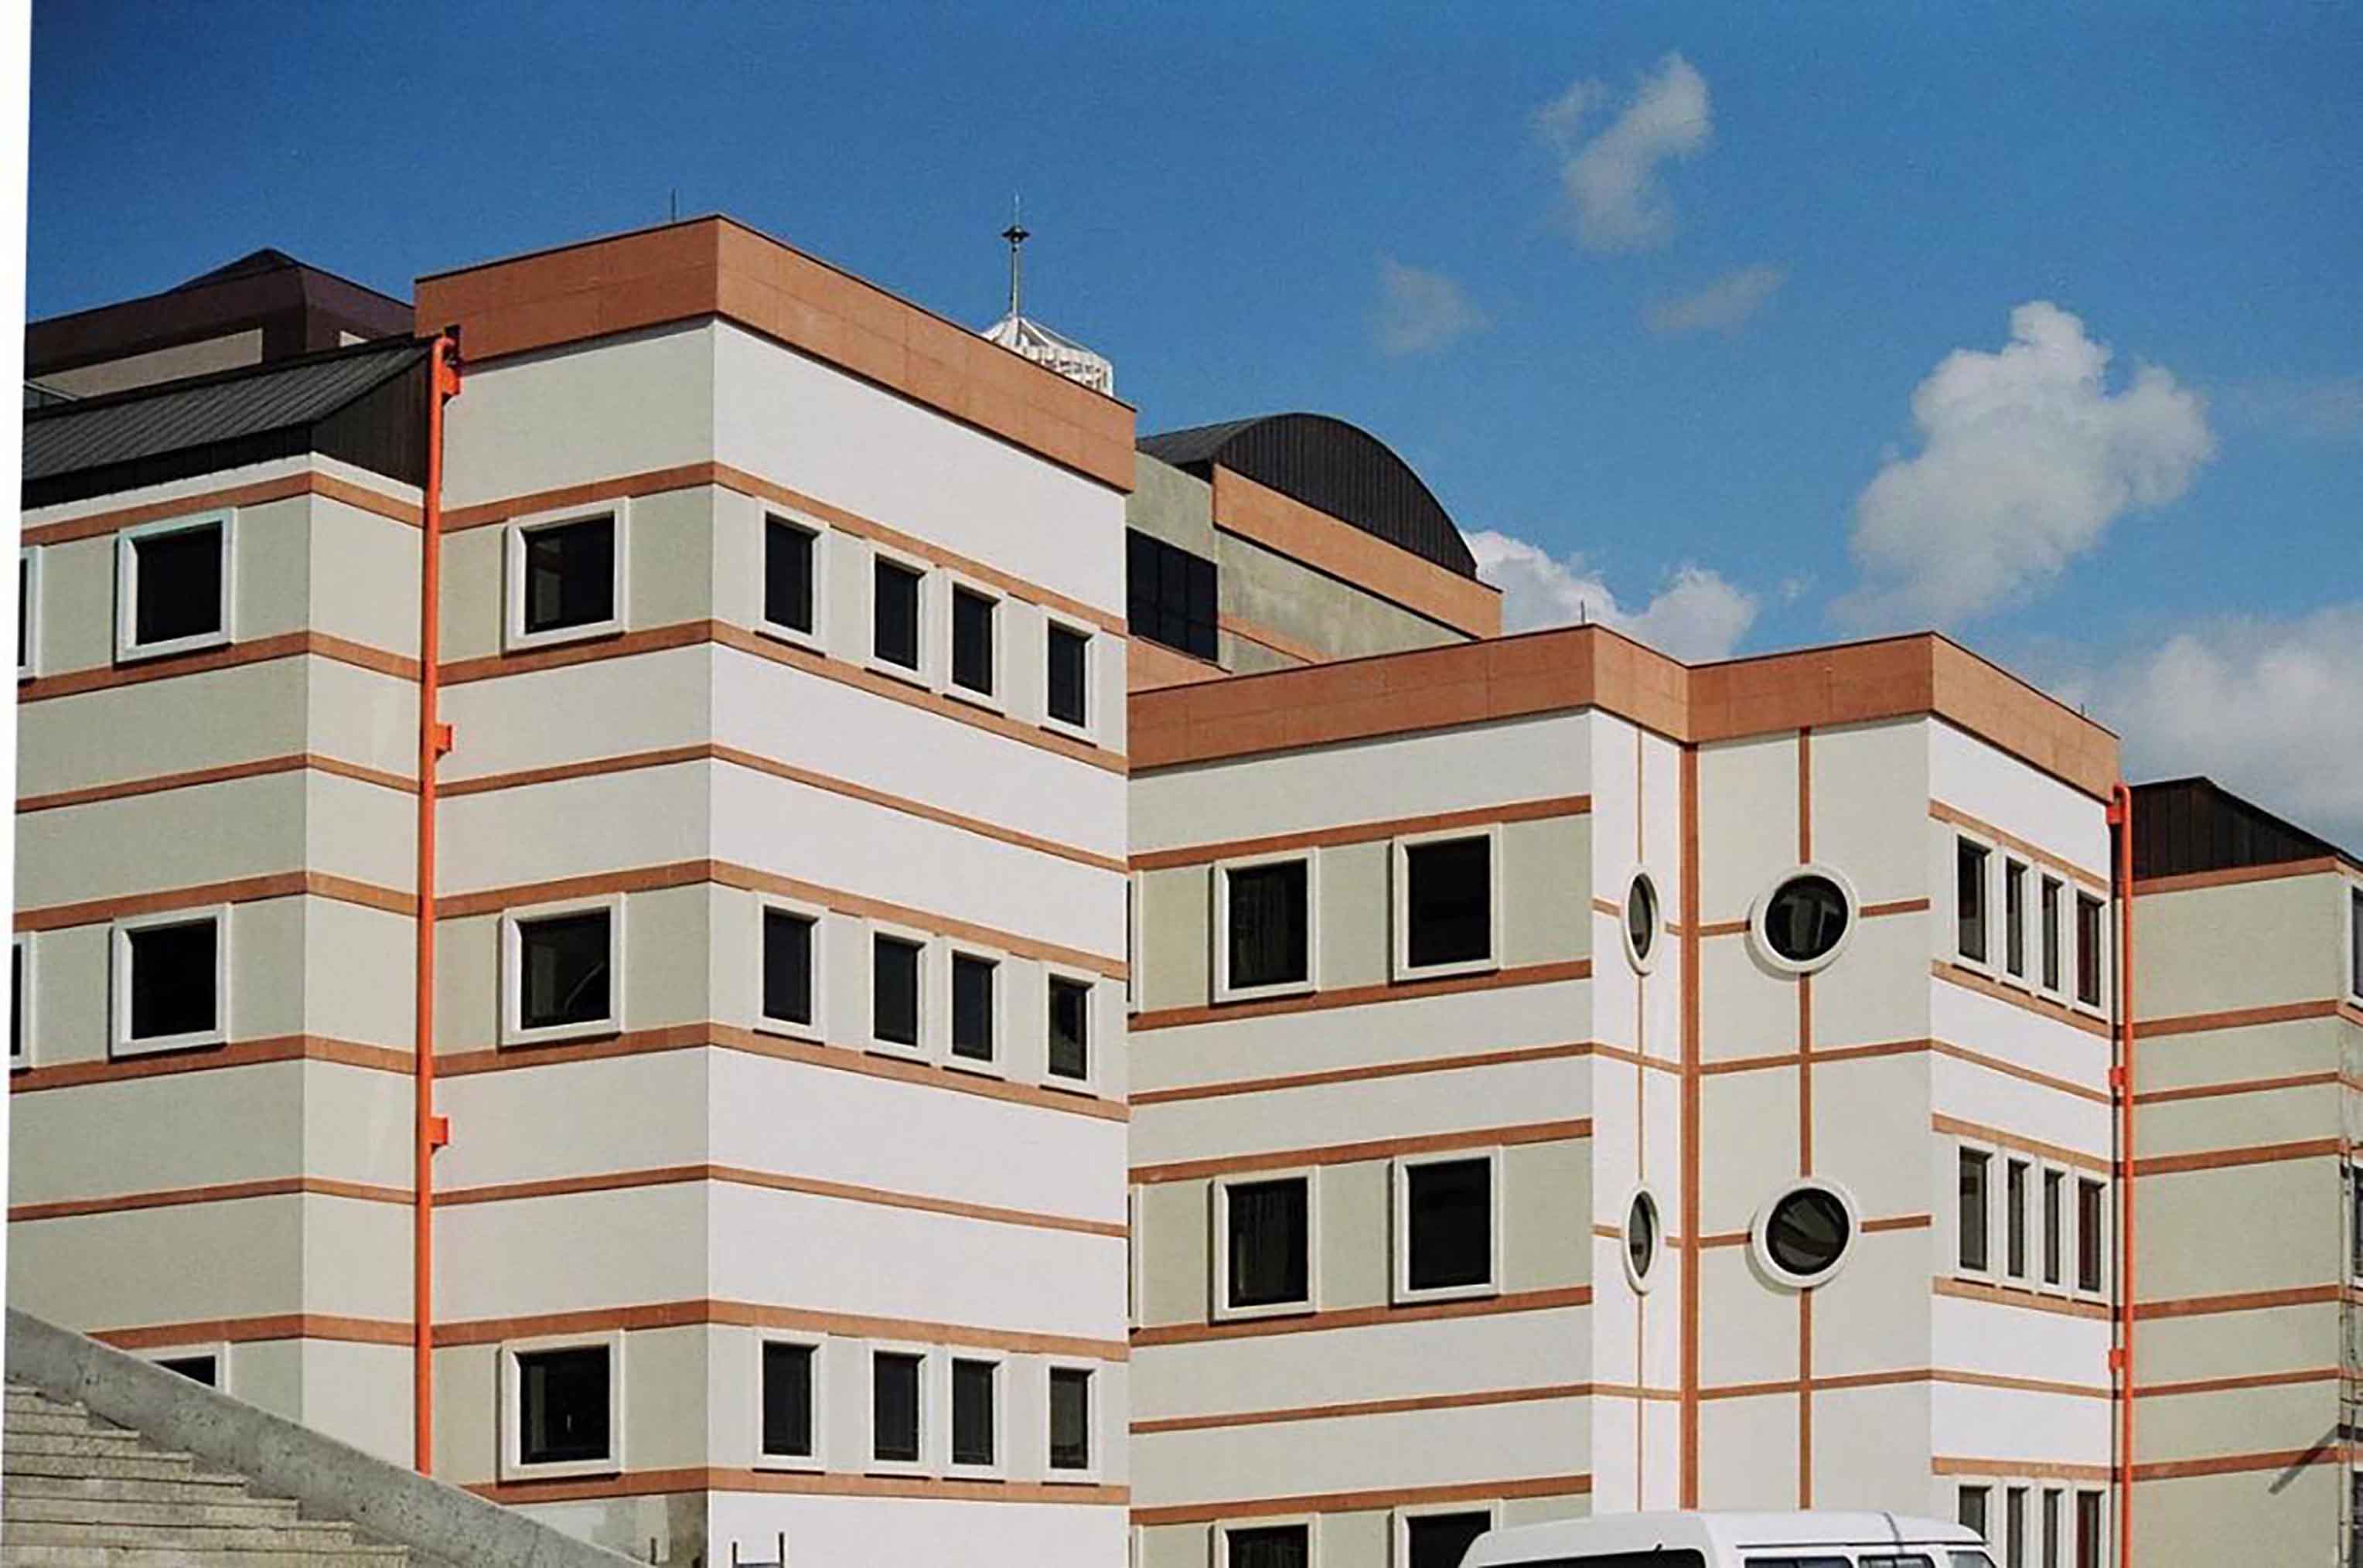 Fibrobeton Kocaeli University Medical Faculty Hospital